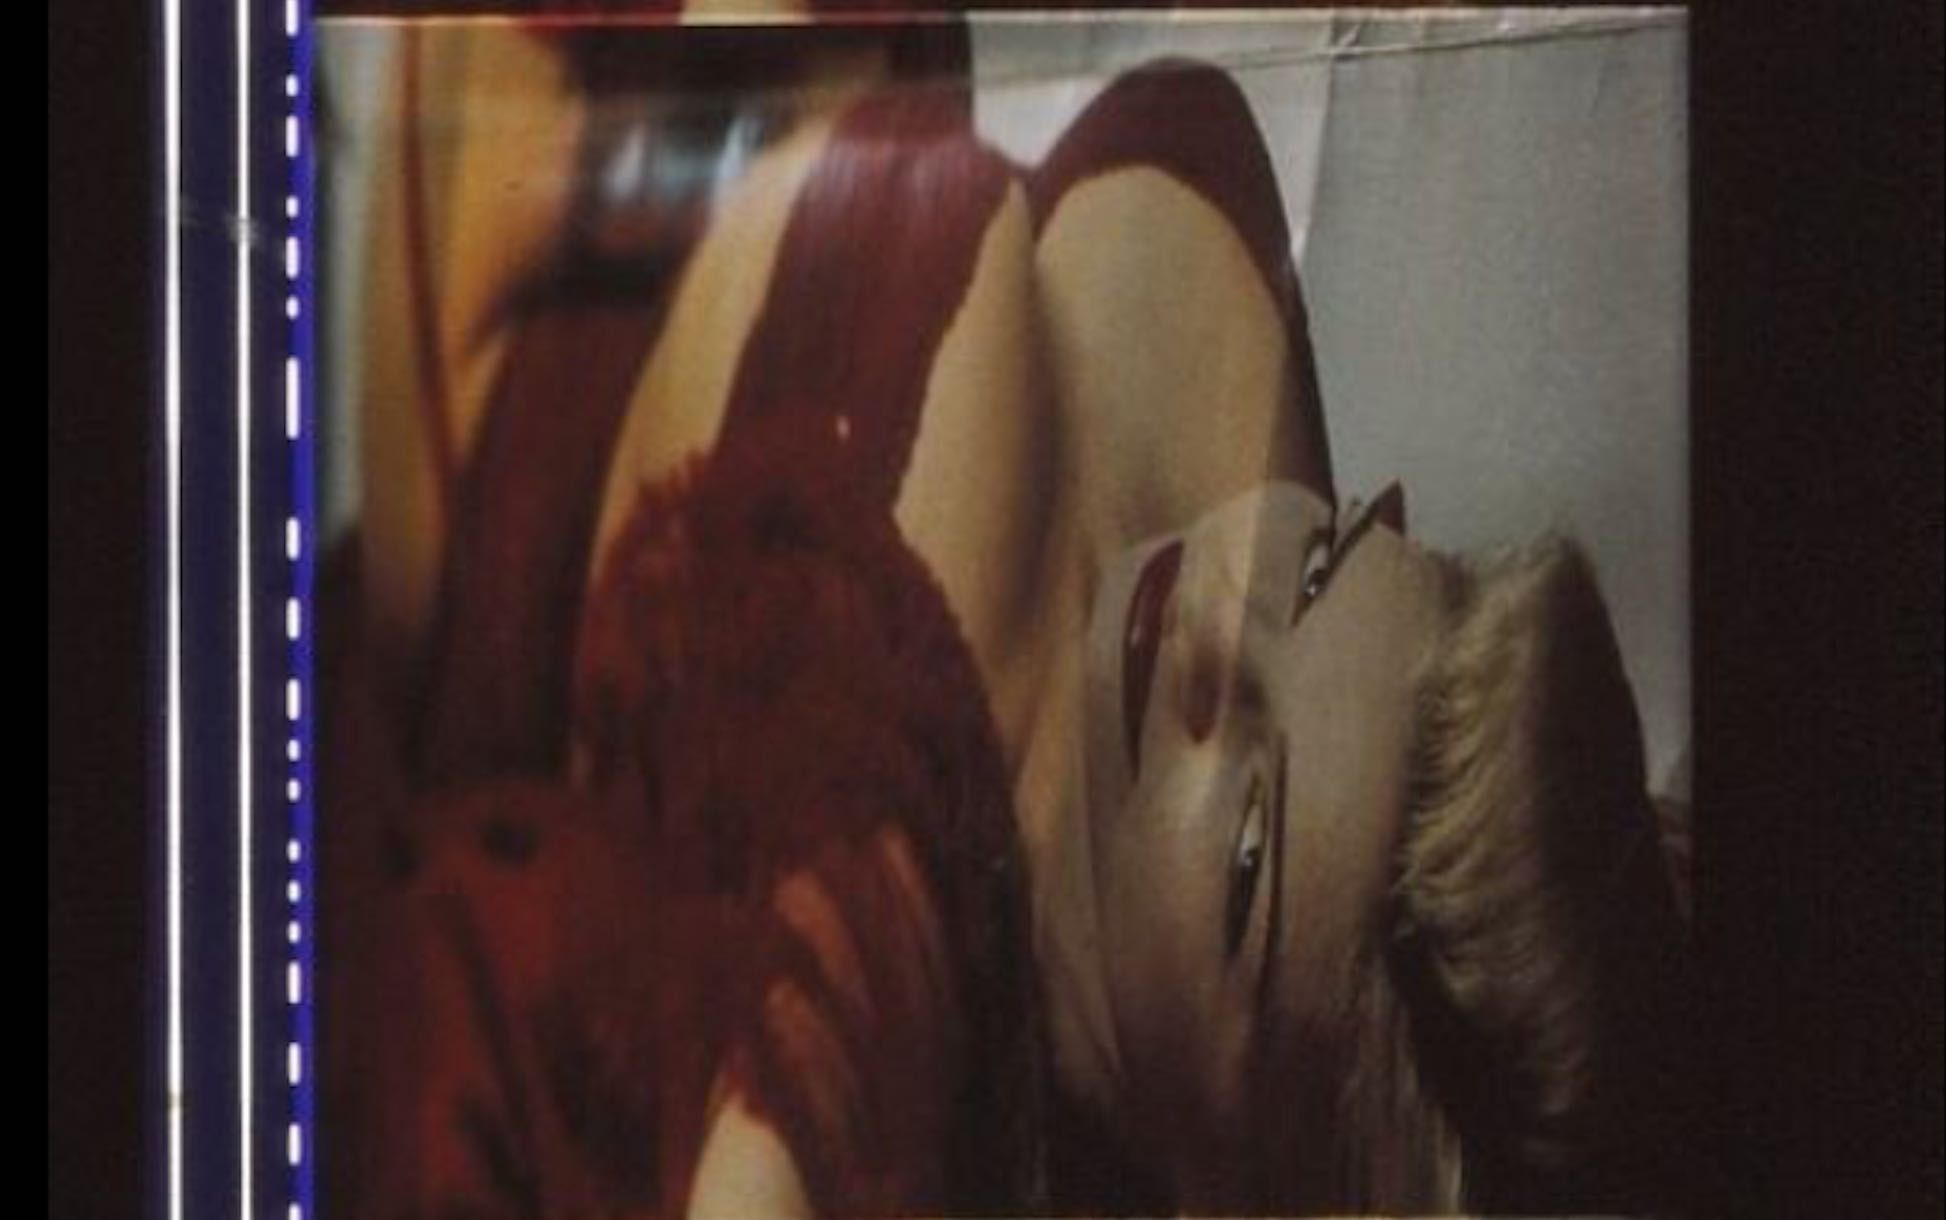 Fotogramas em película 35mm do filme culto THE MATRIX